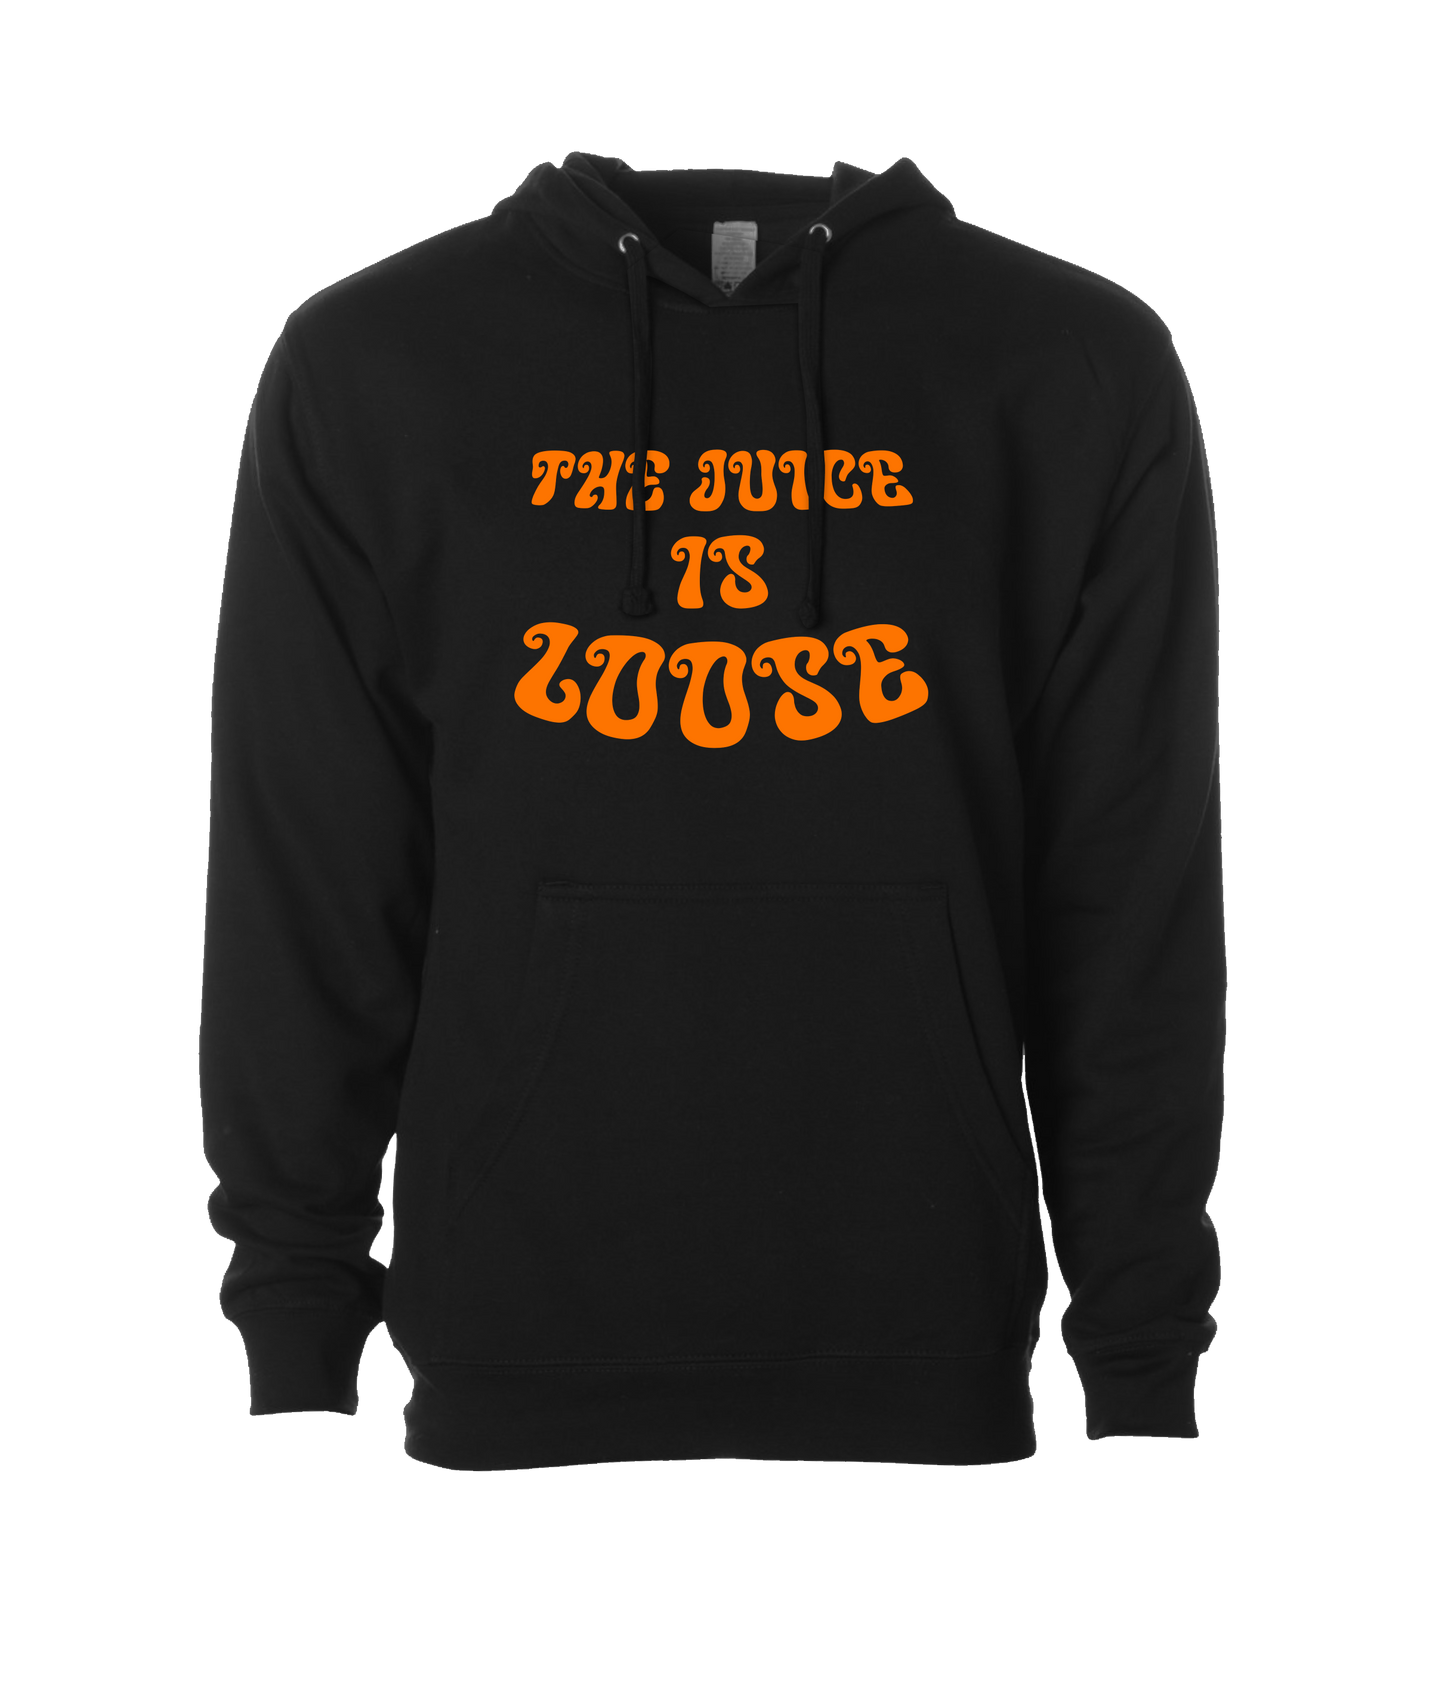 Orange Juice - The Juice is Loose - Black Hoodie